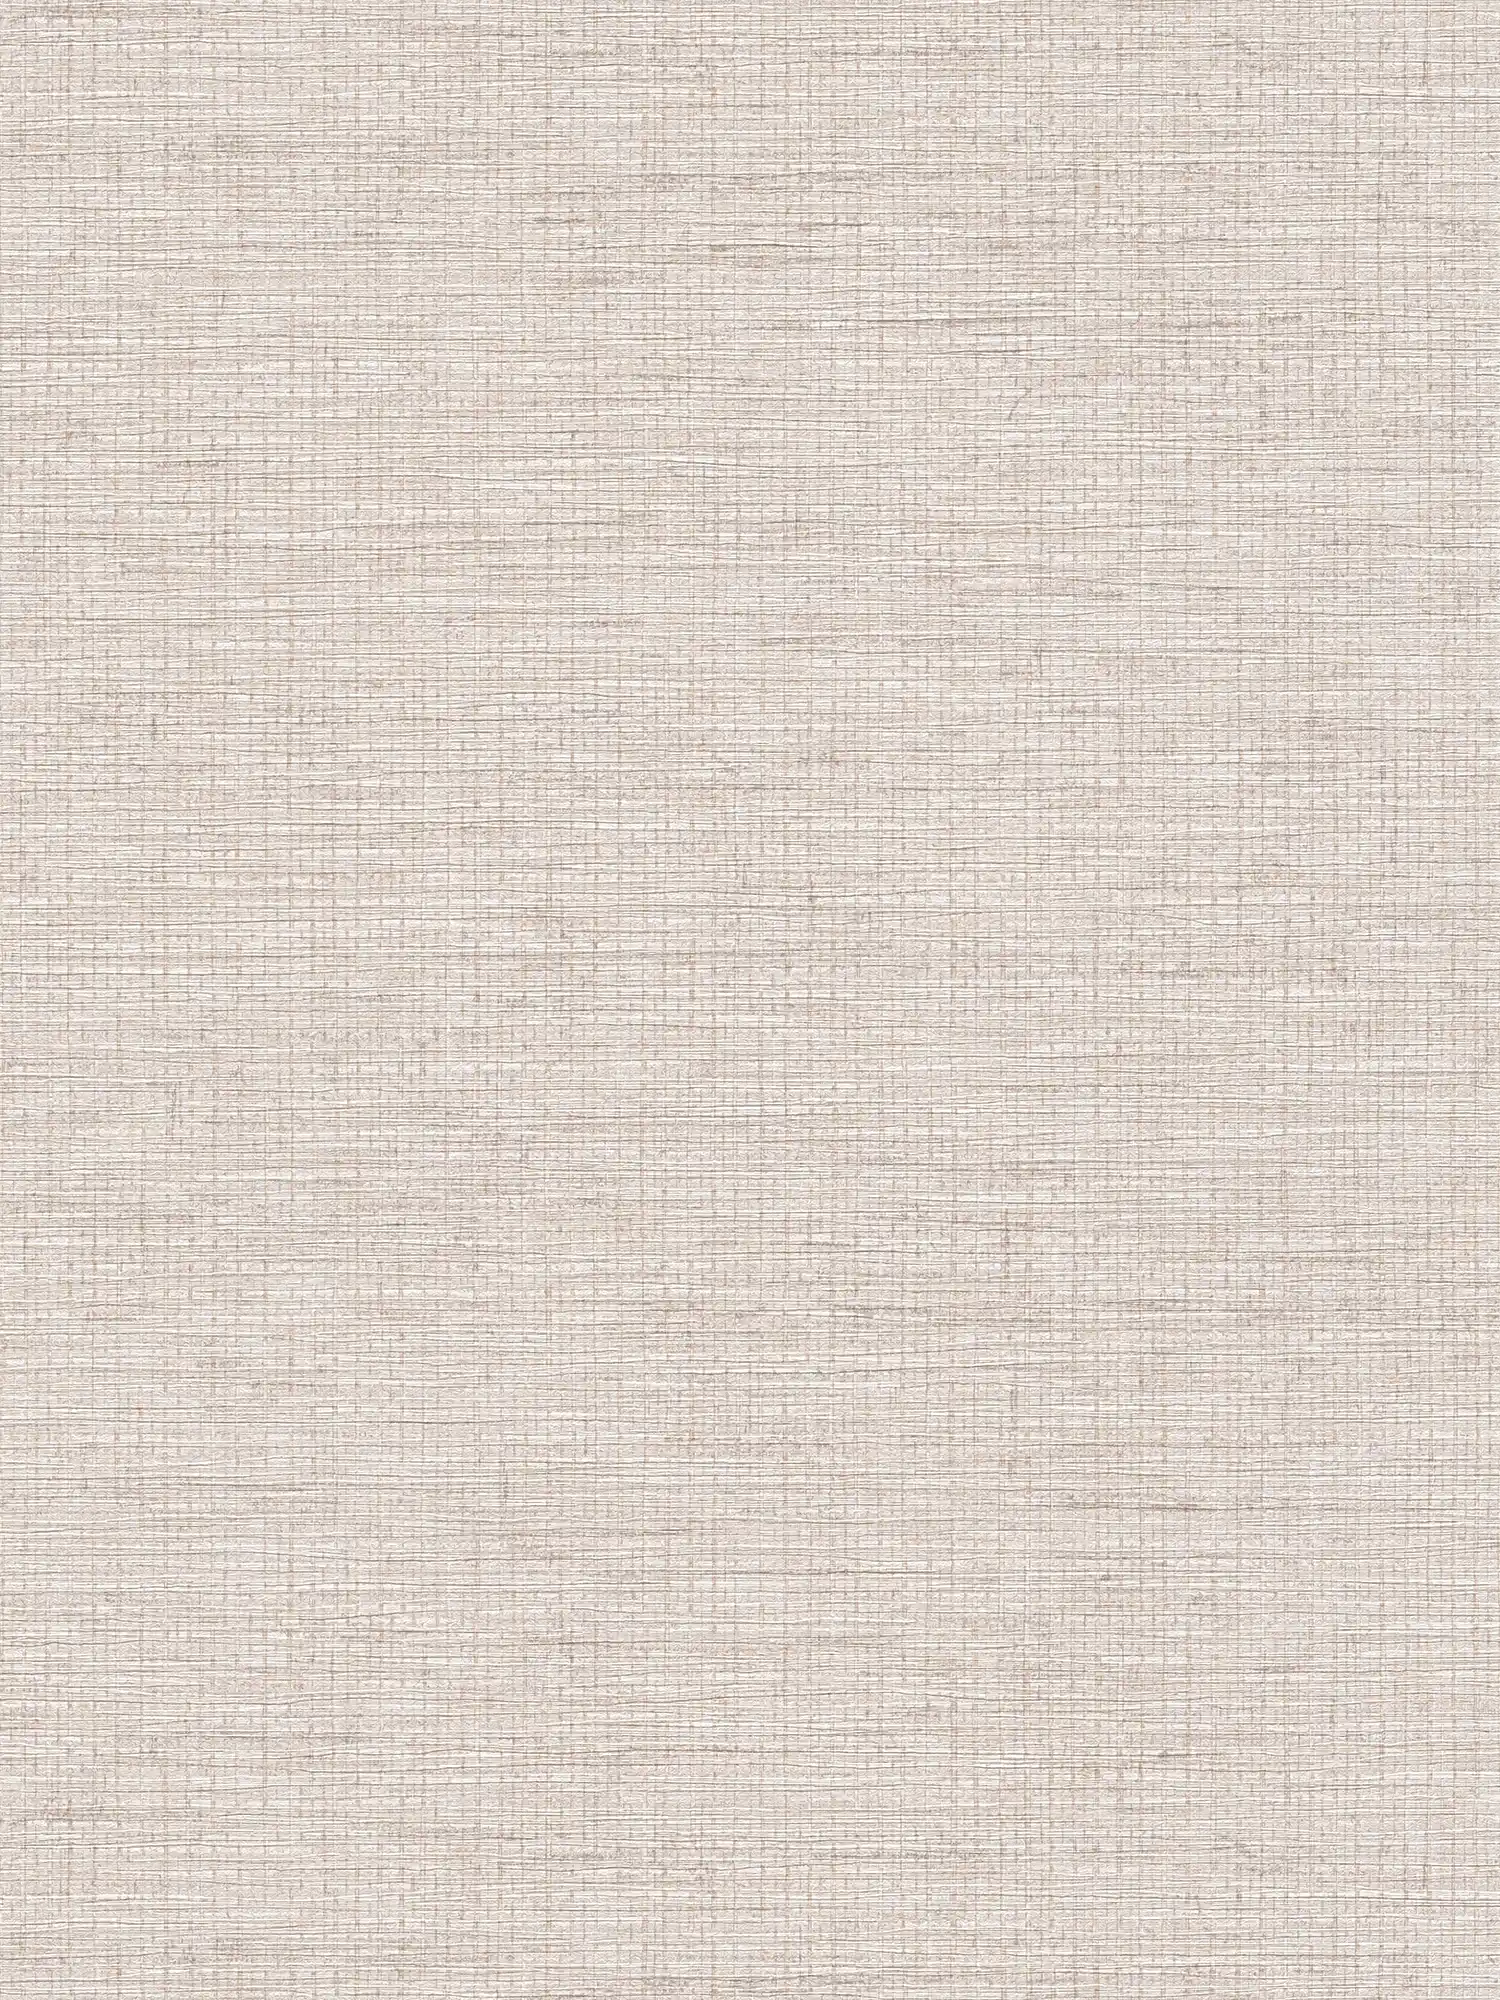 Non-woven wallpaper ethno design grey with raffia pattern
